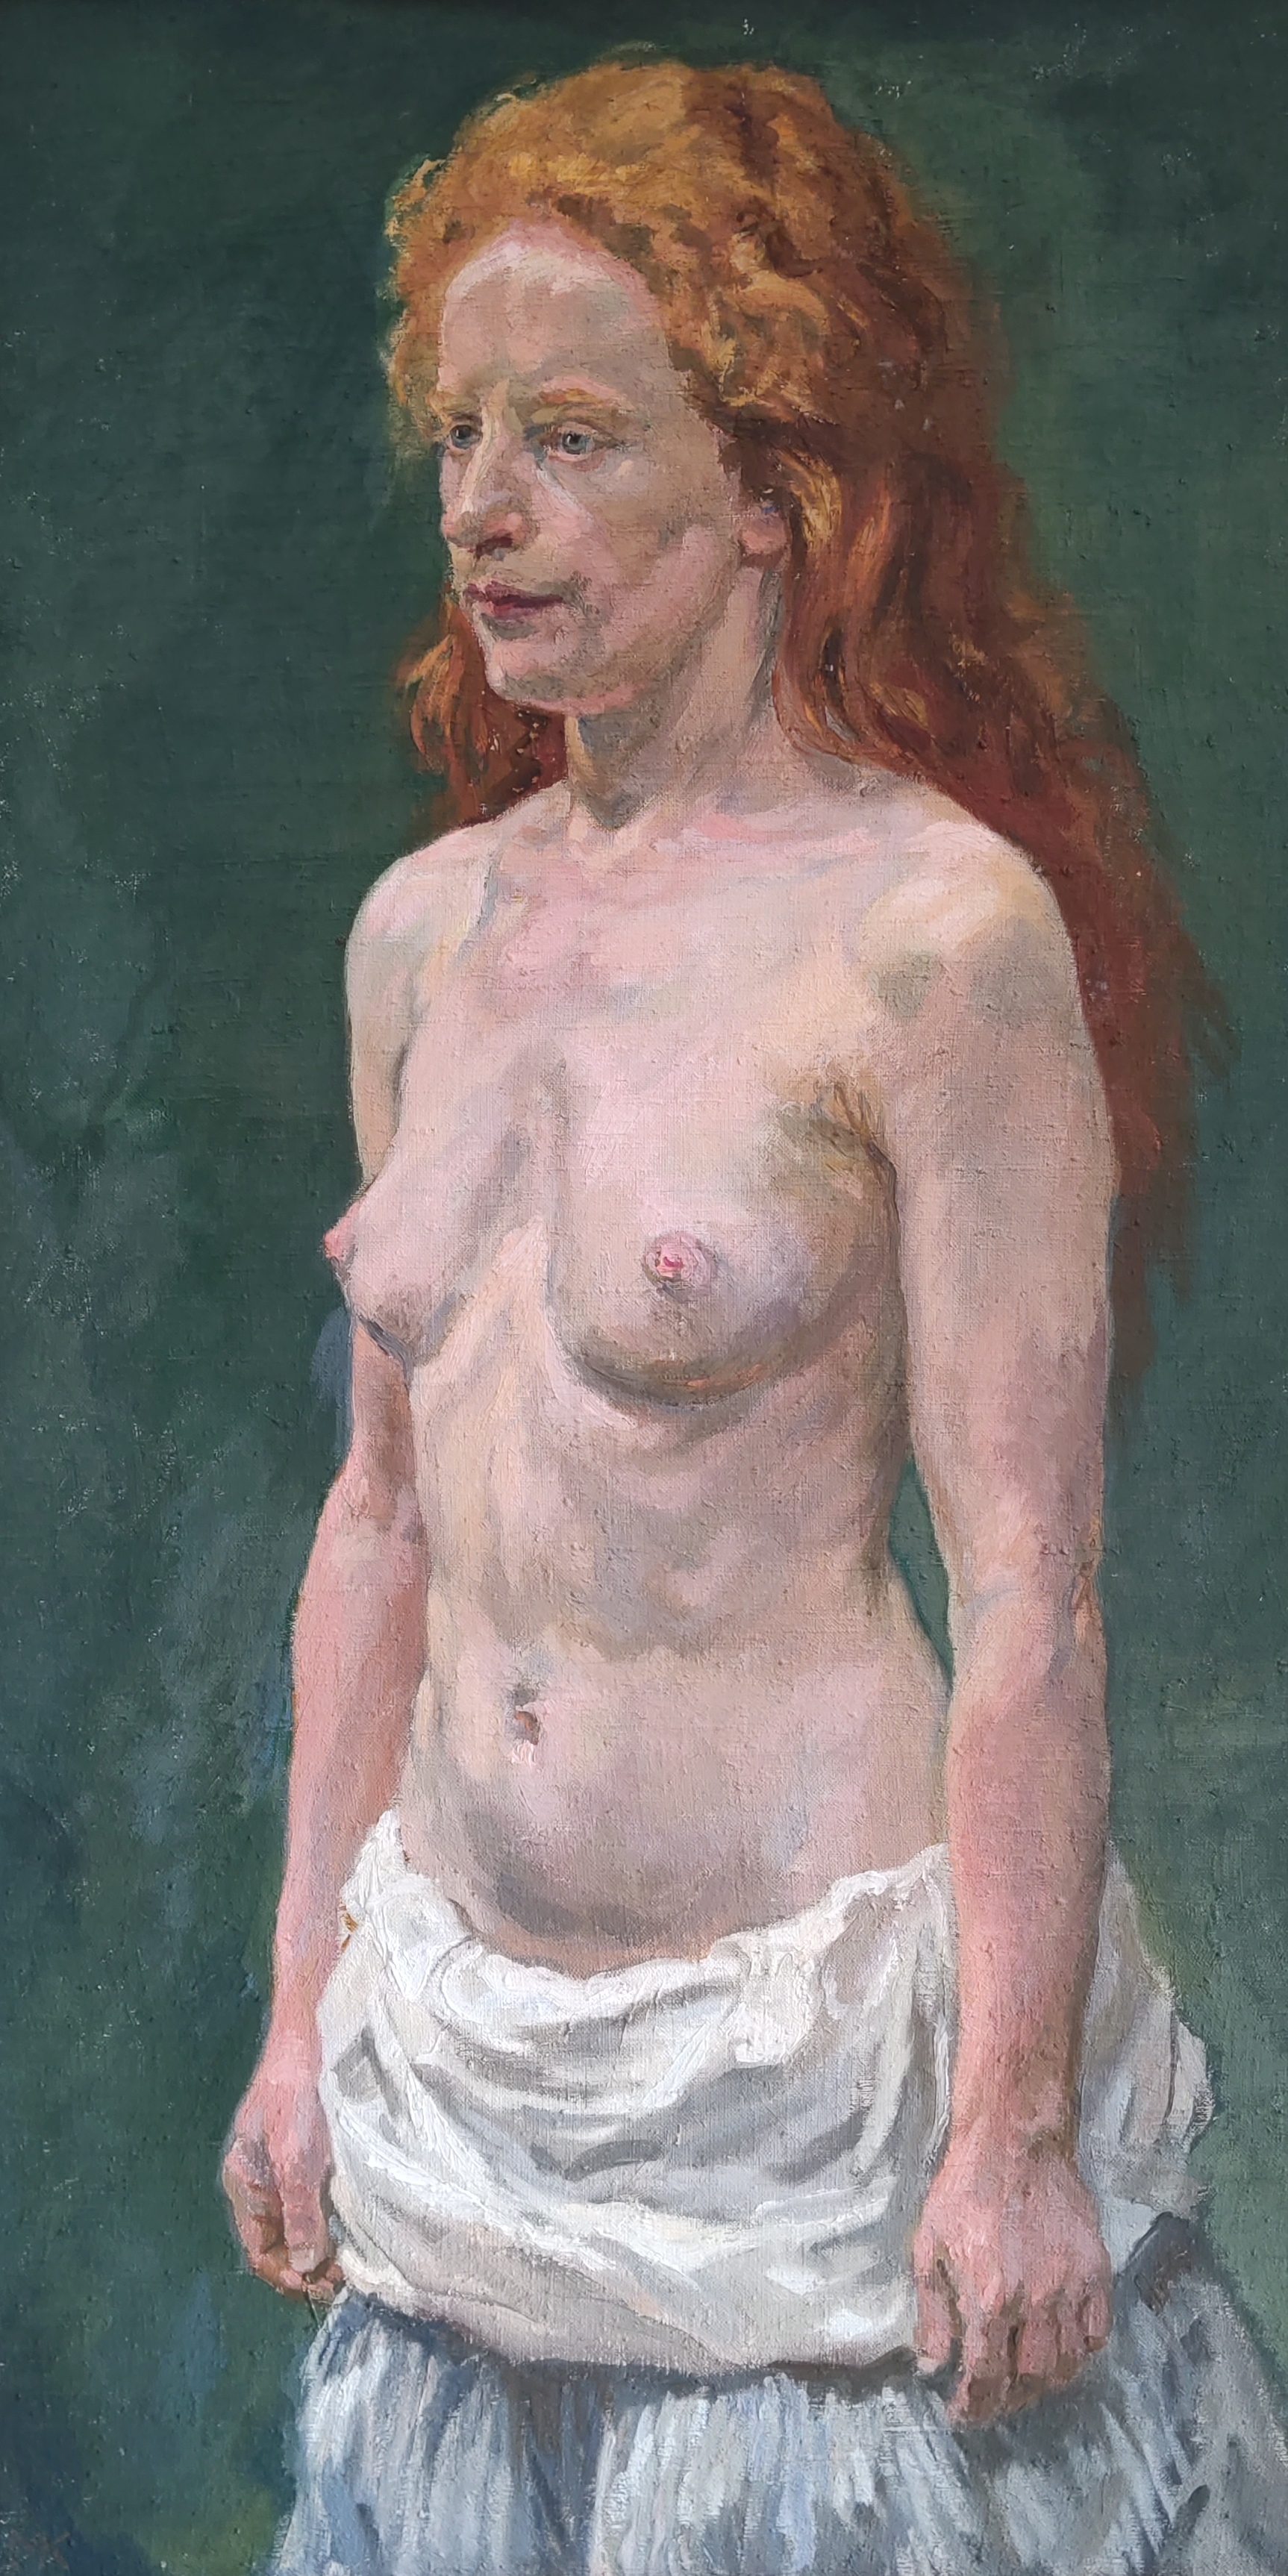 Obraz Akt zrzavé svlečené ženy, olej na plátně 96cm x 57cm. Moc pěkné !